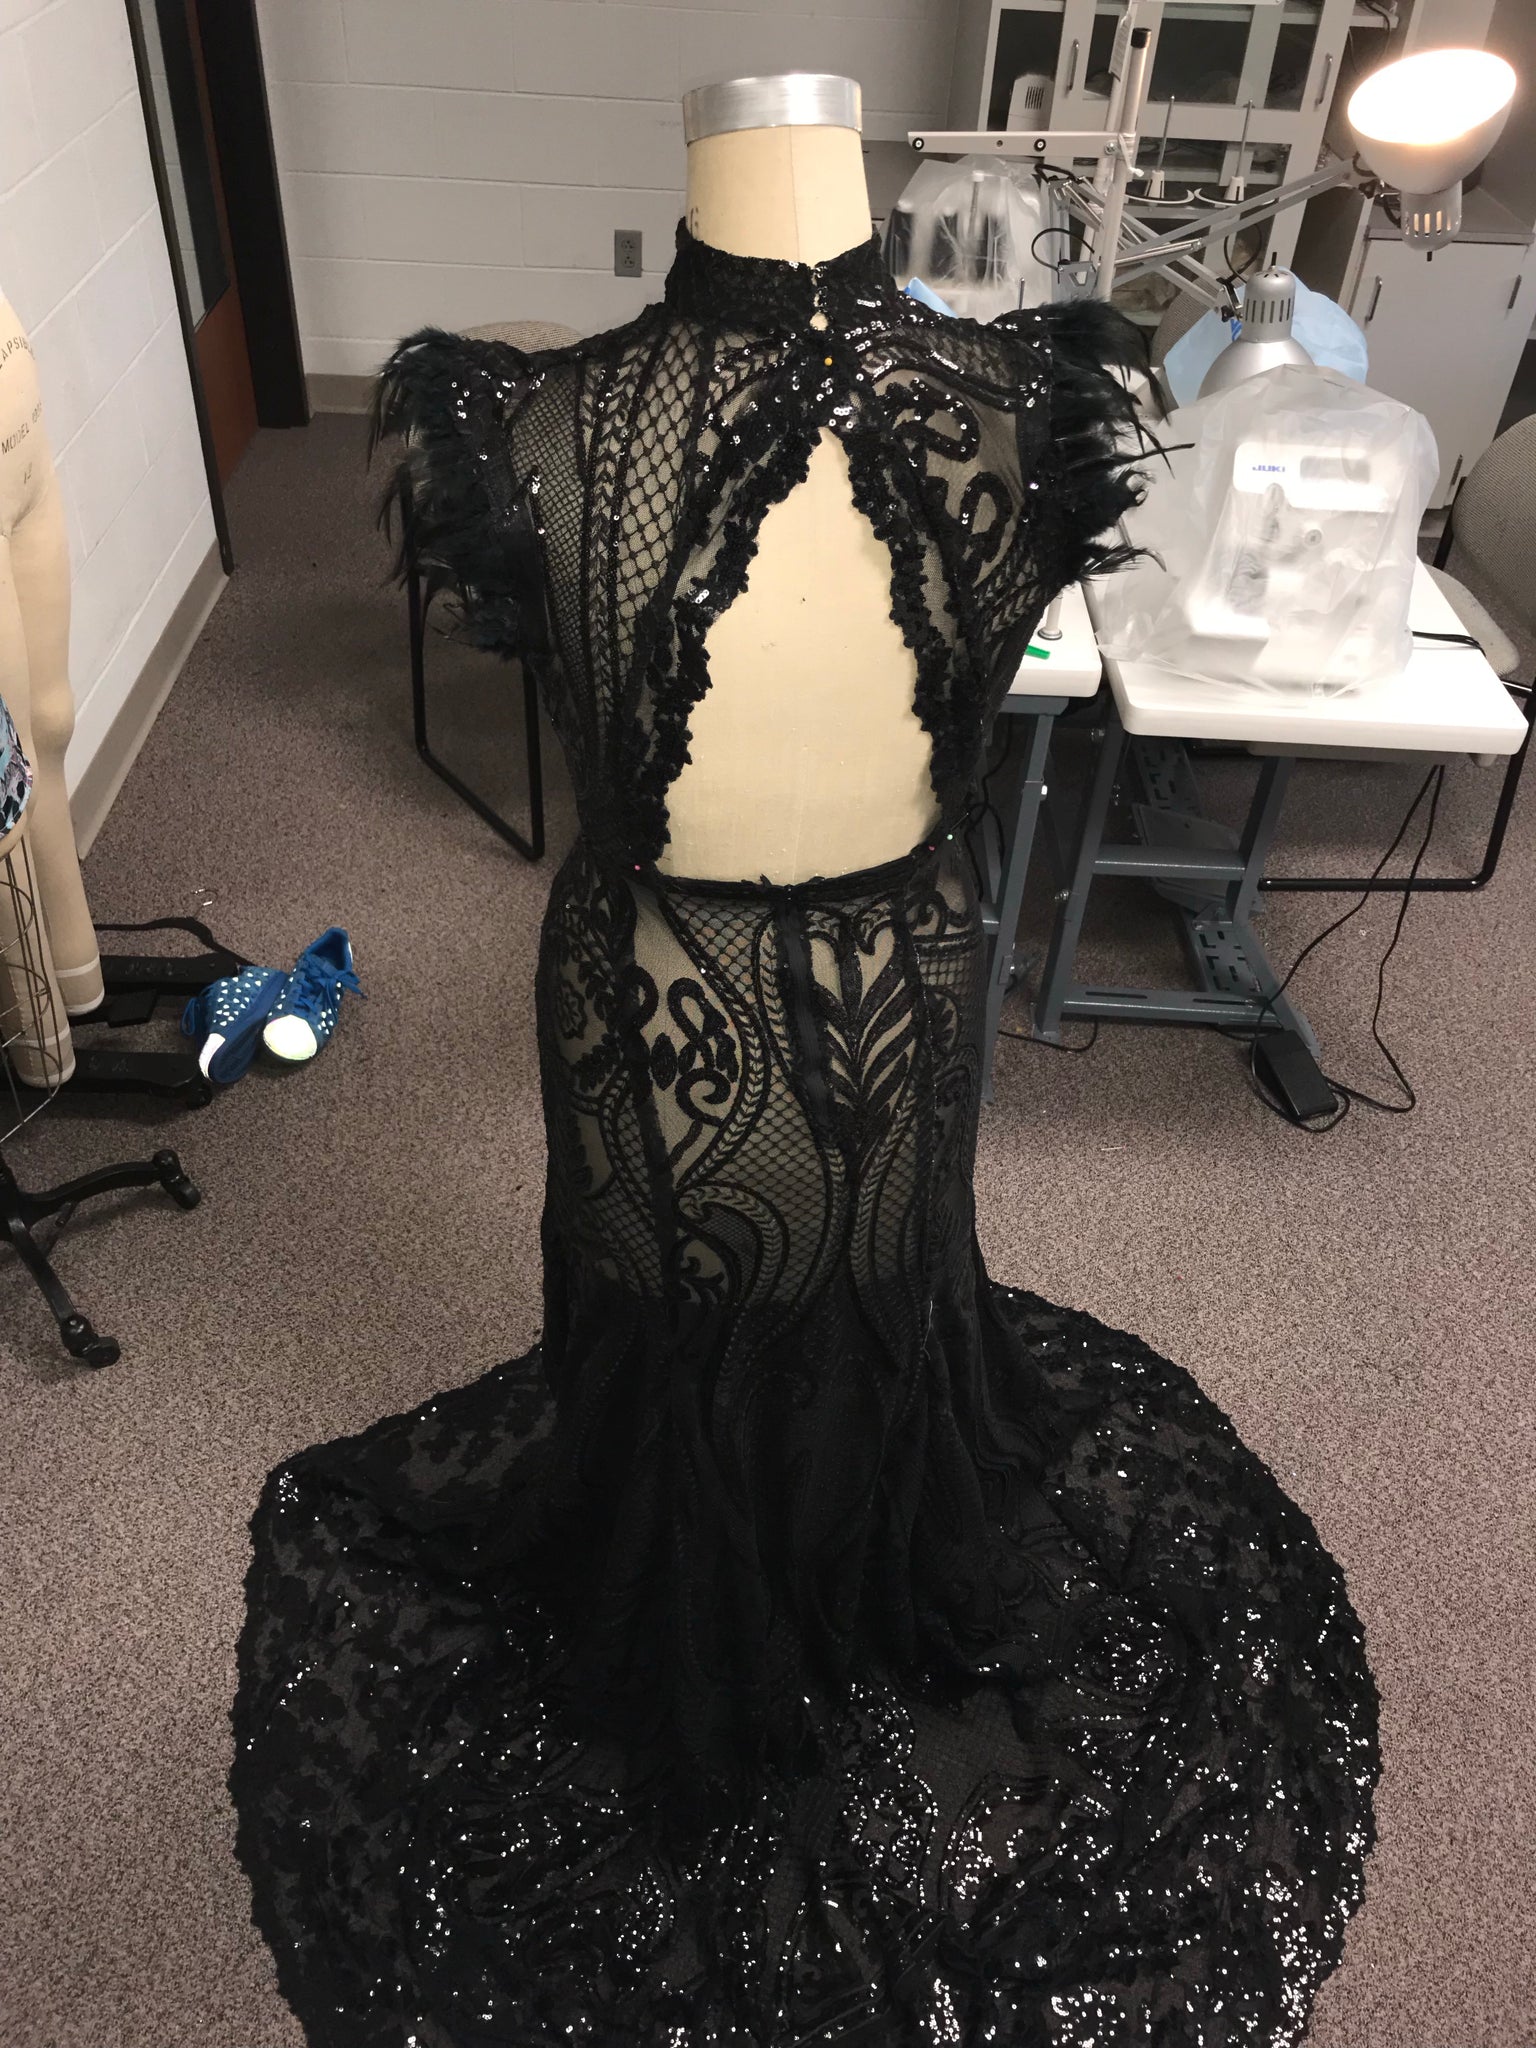 The Noir Gown